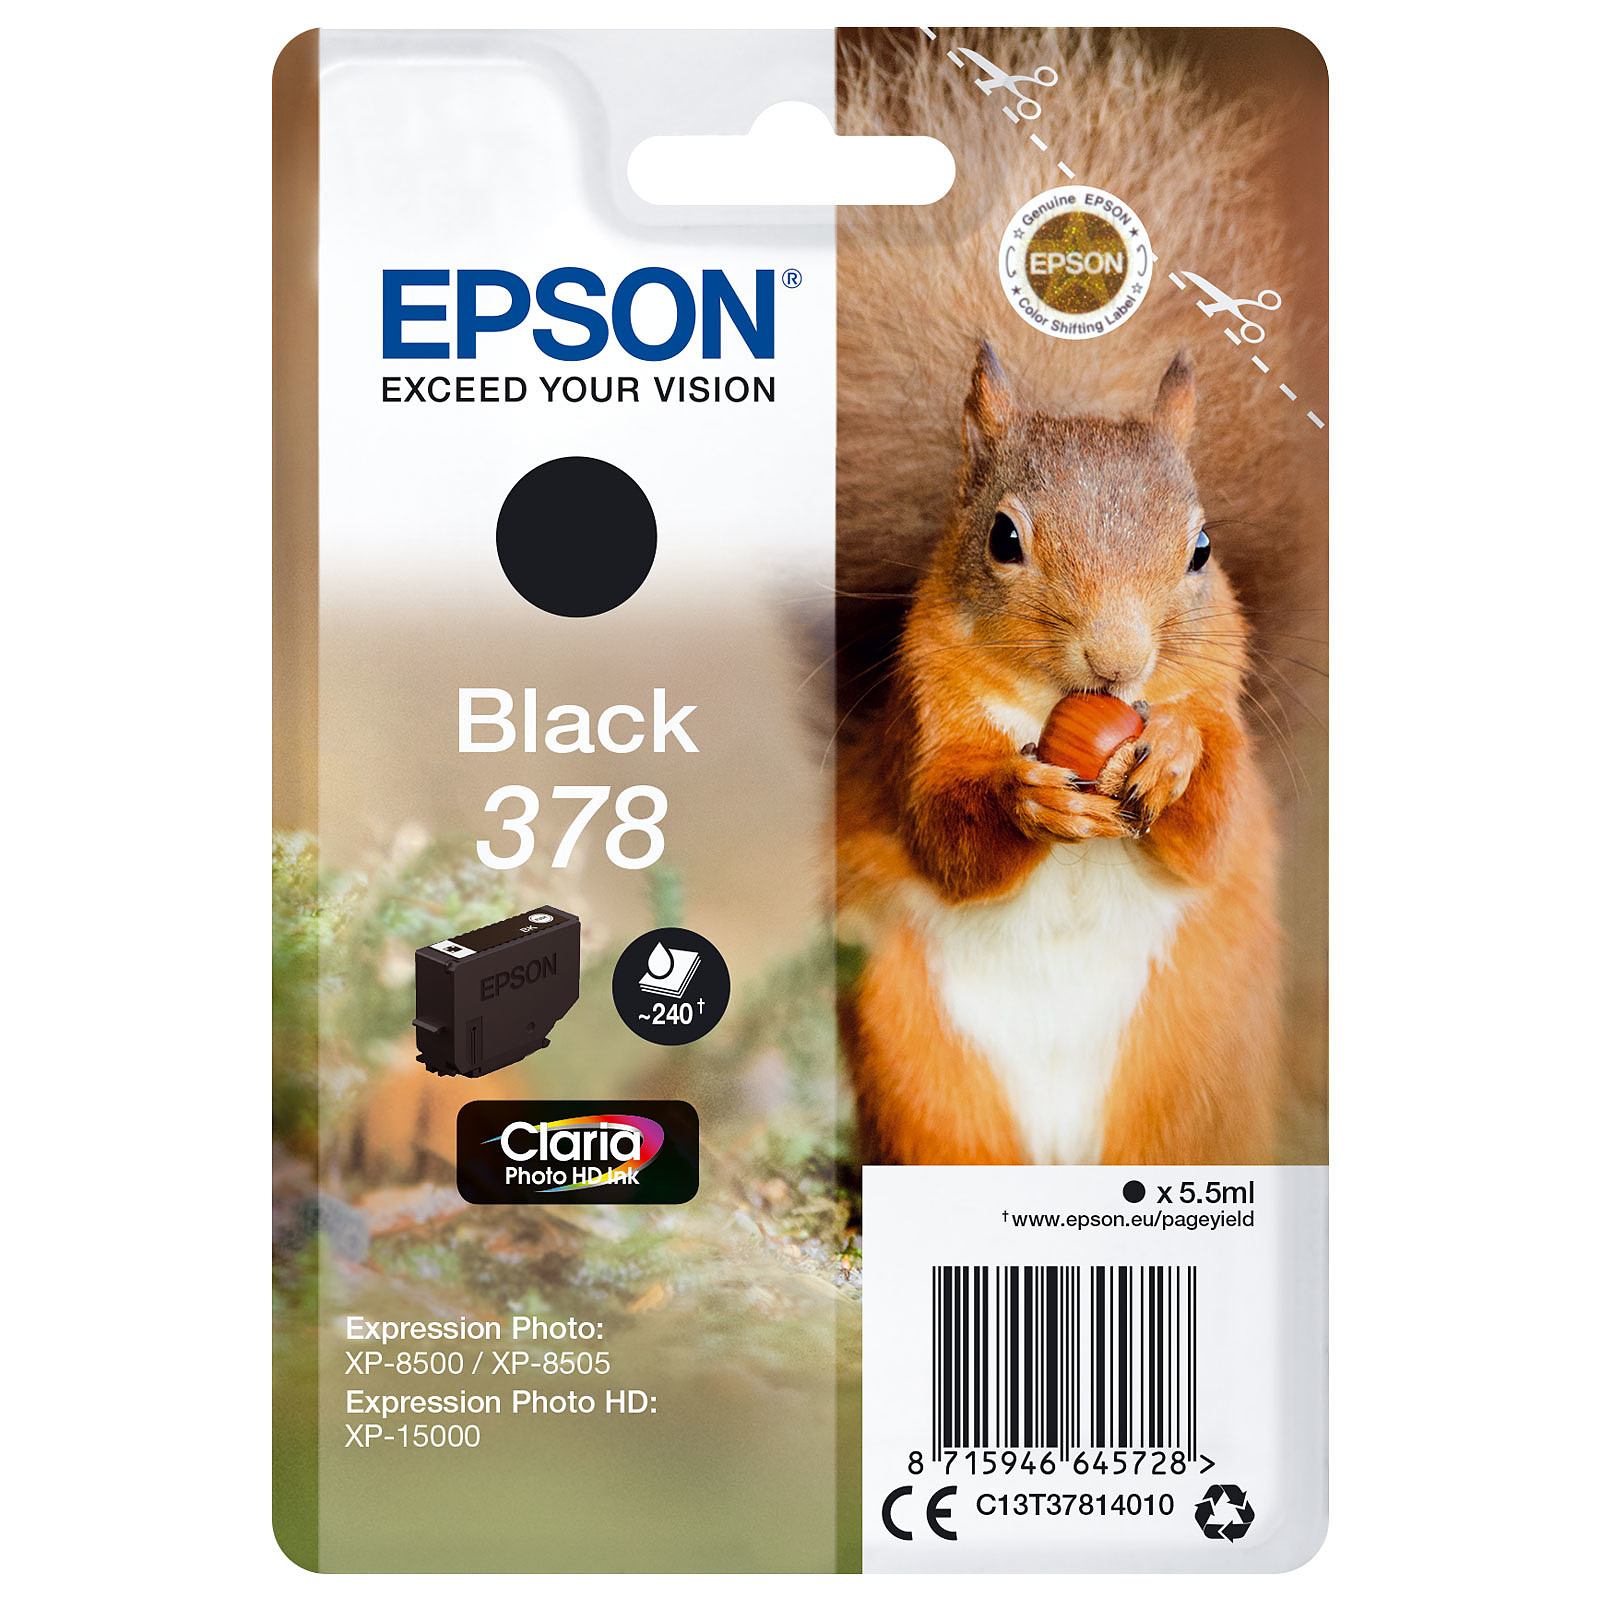 Epson Ecureuil Noir 378 - Cartouche imprimante Epson